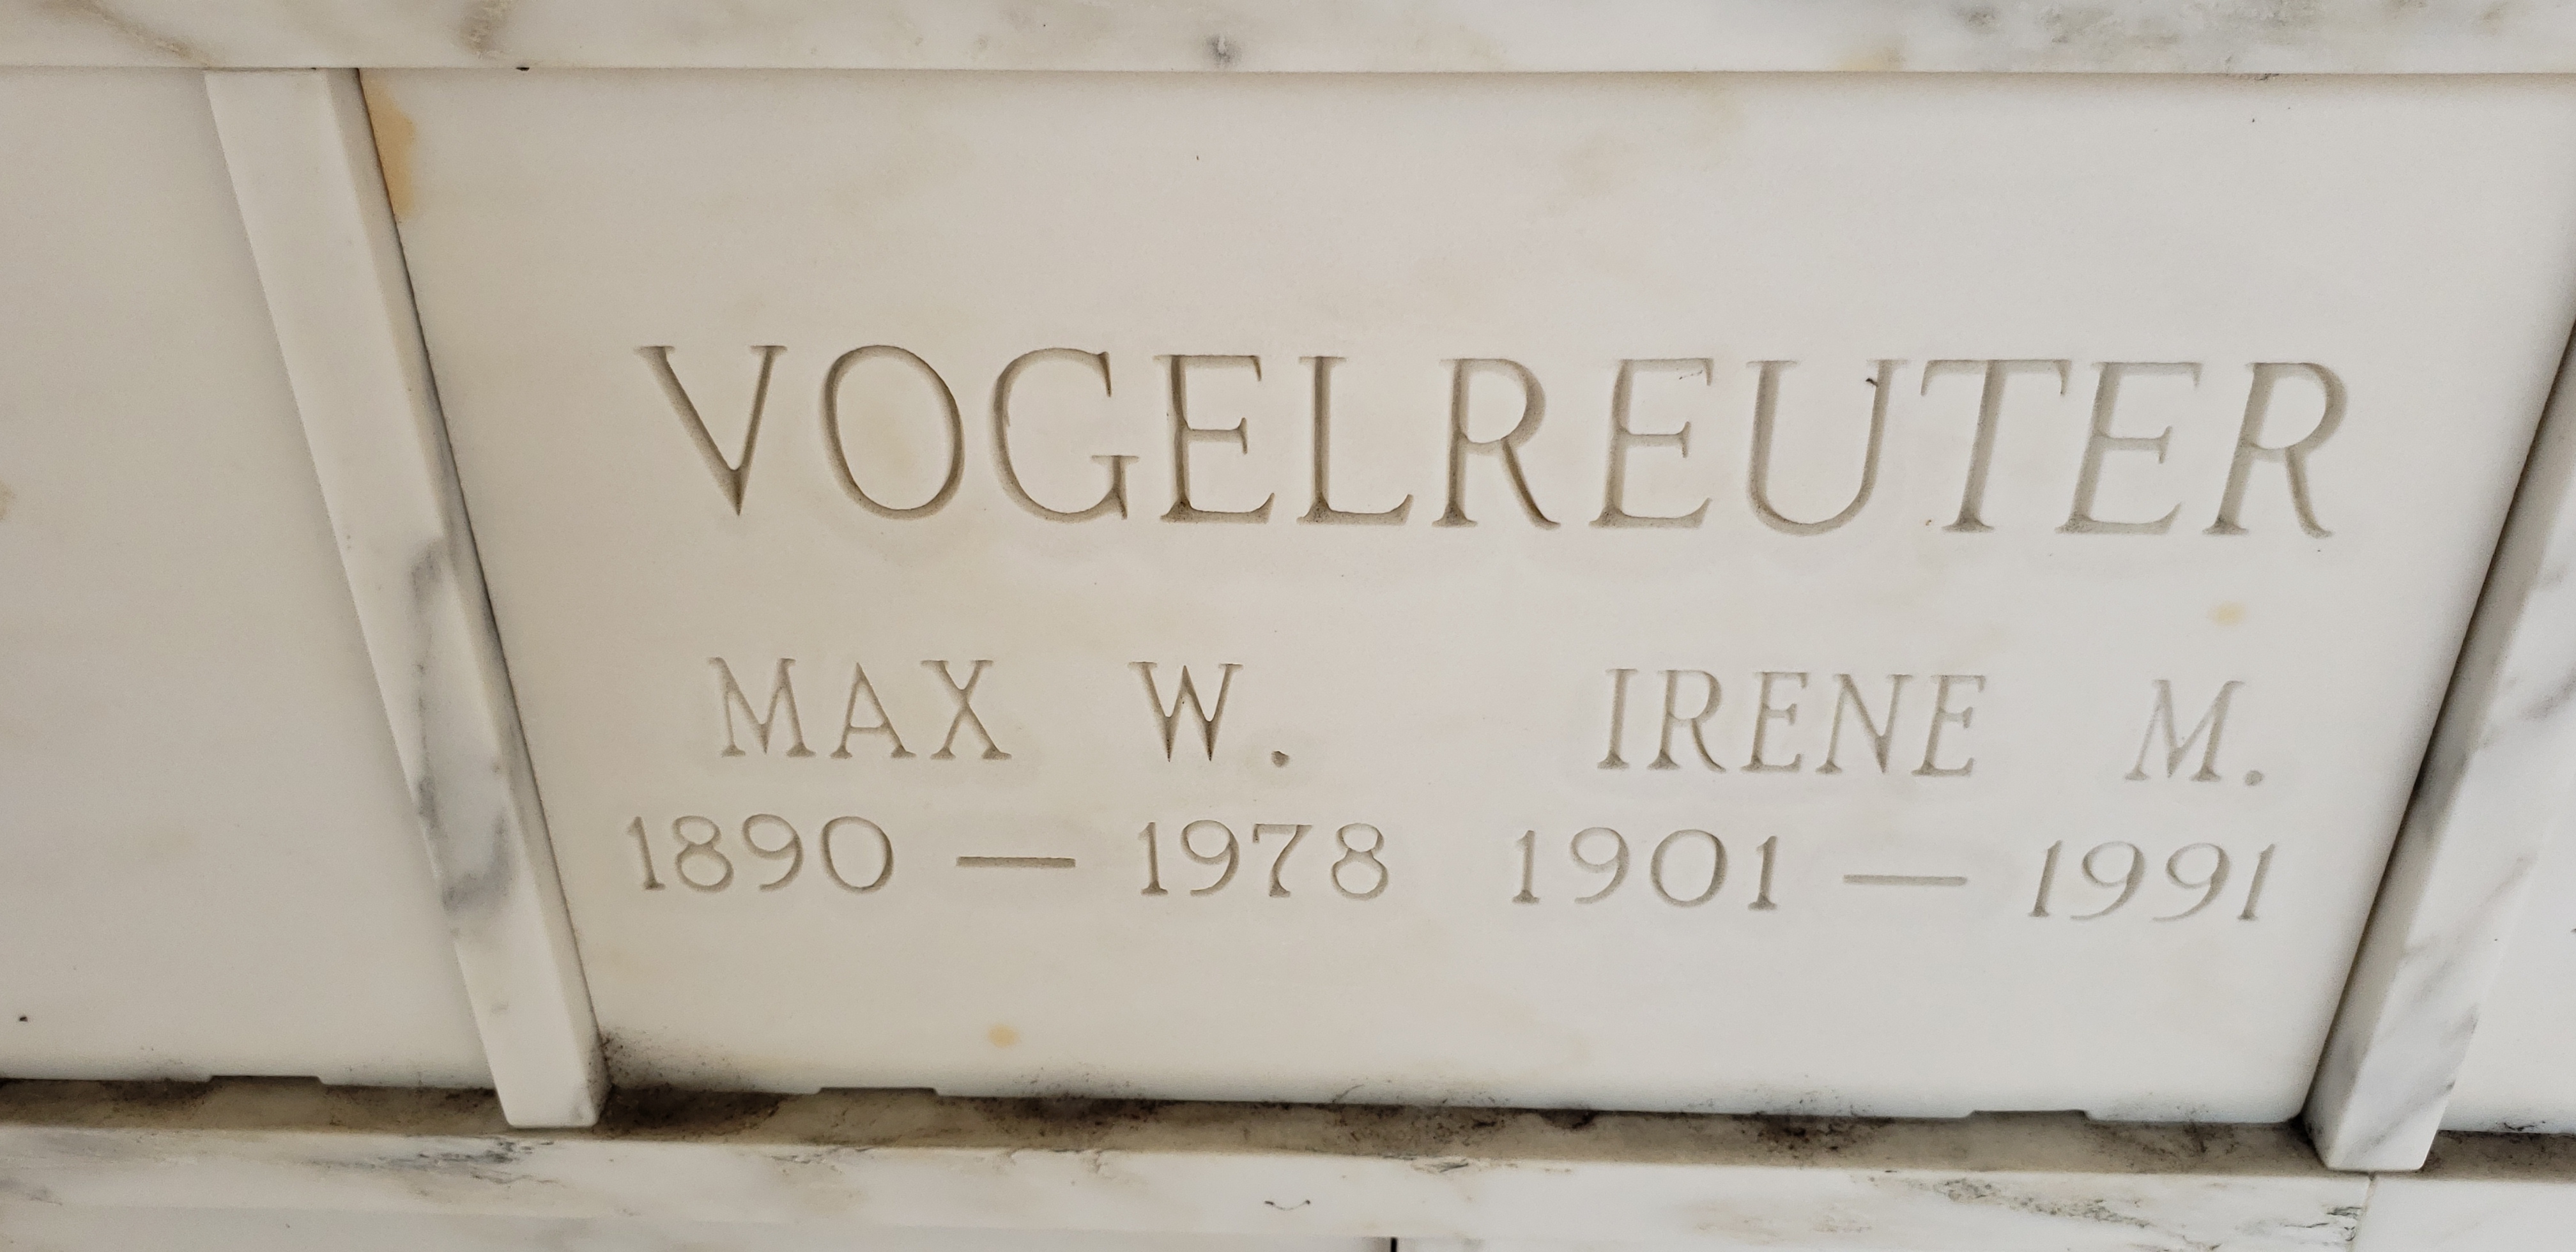 Max W Vogelreuter